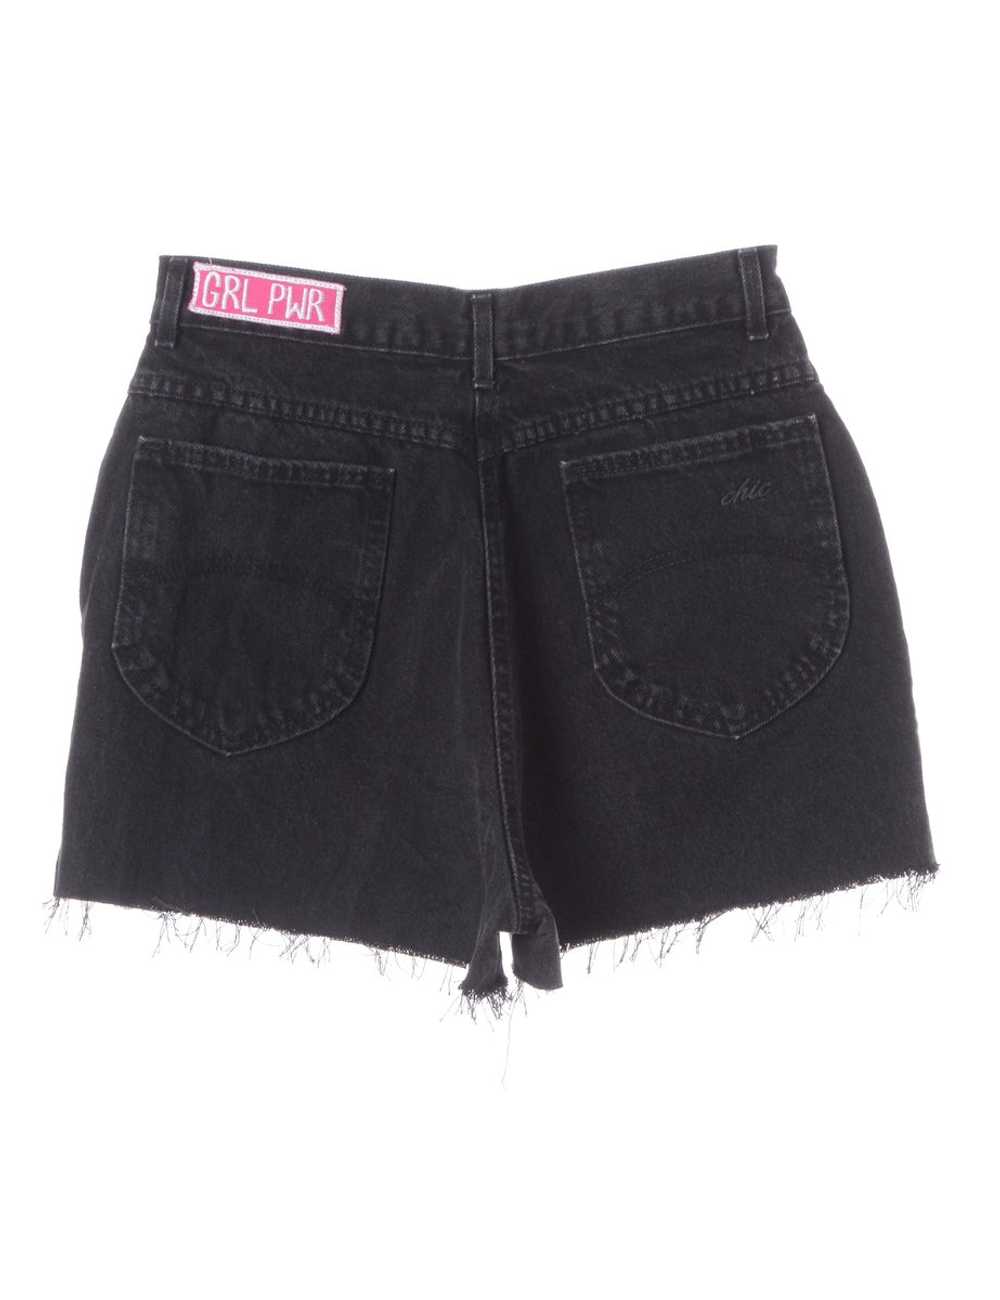 Label GRL PWR Embroidered Denim Shorts - image 2